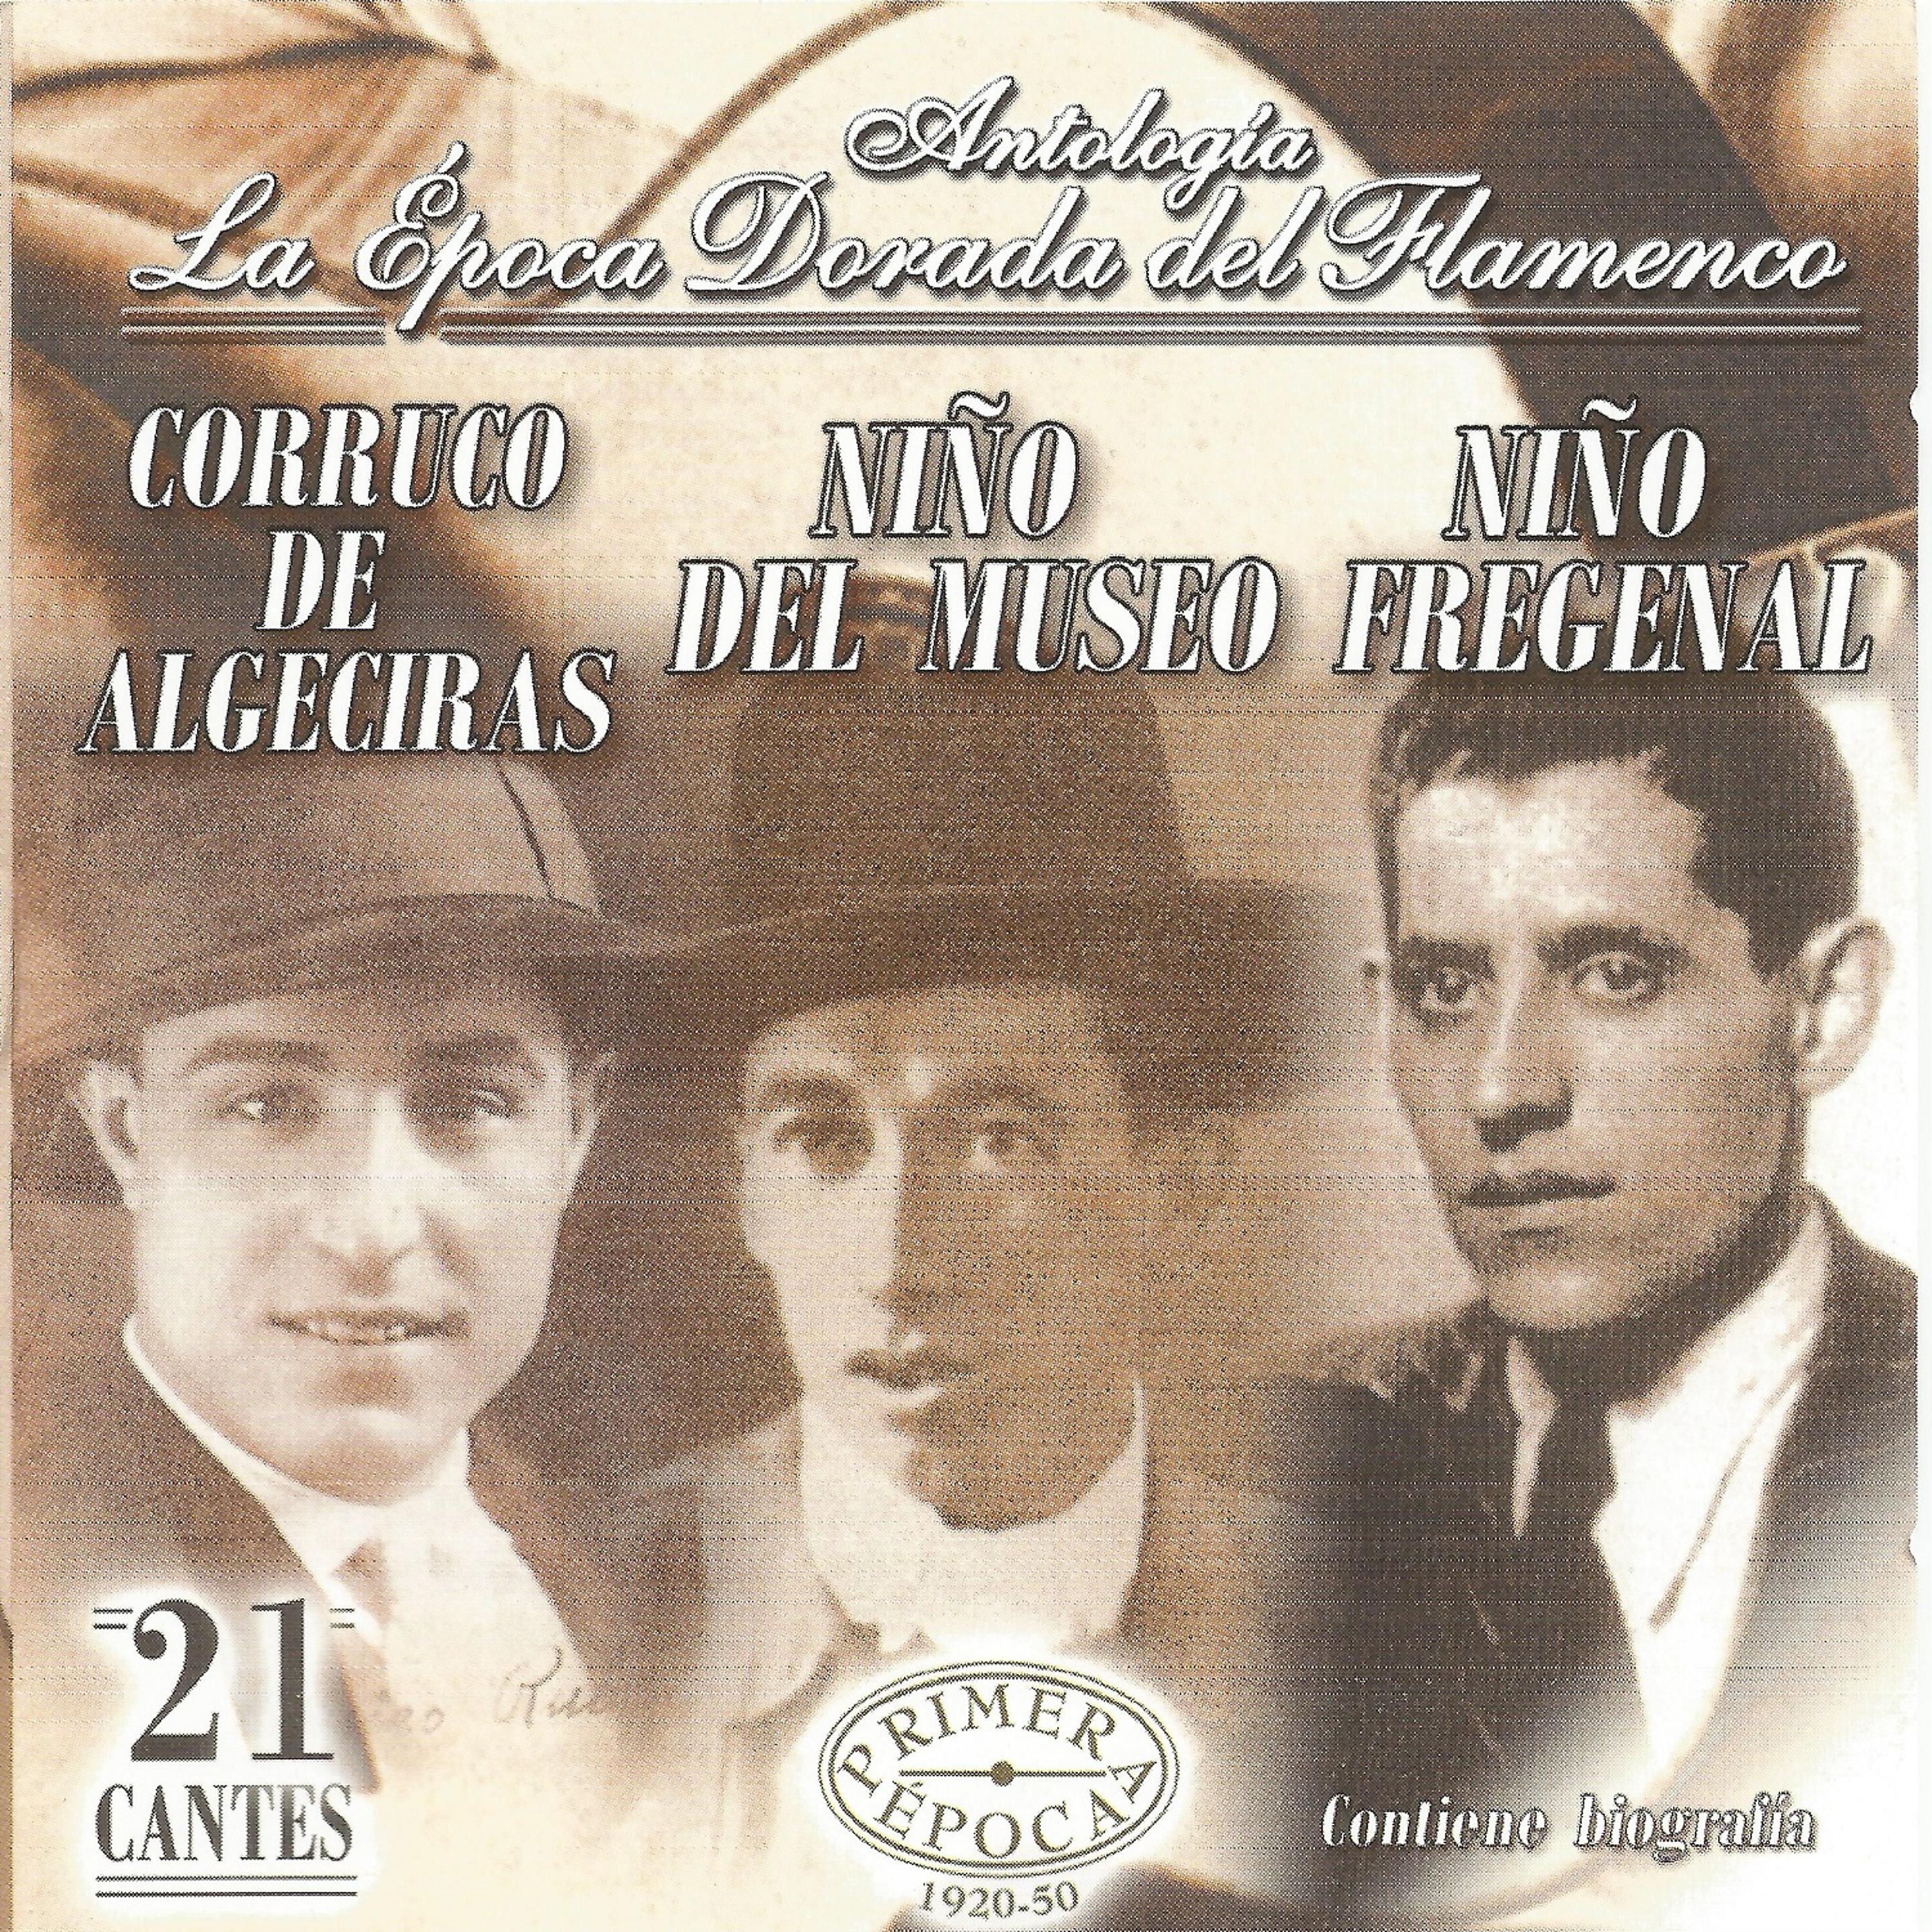 Постер альбома Corruco de Algeciras, Niño del Museo, Niño Frenegal, La Época Dorada del Flamenco